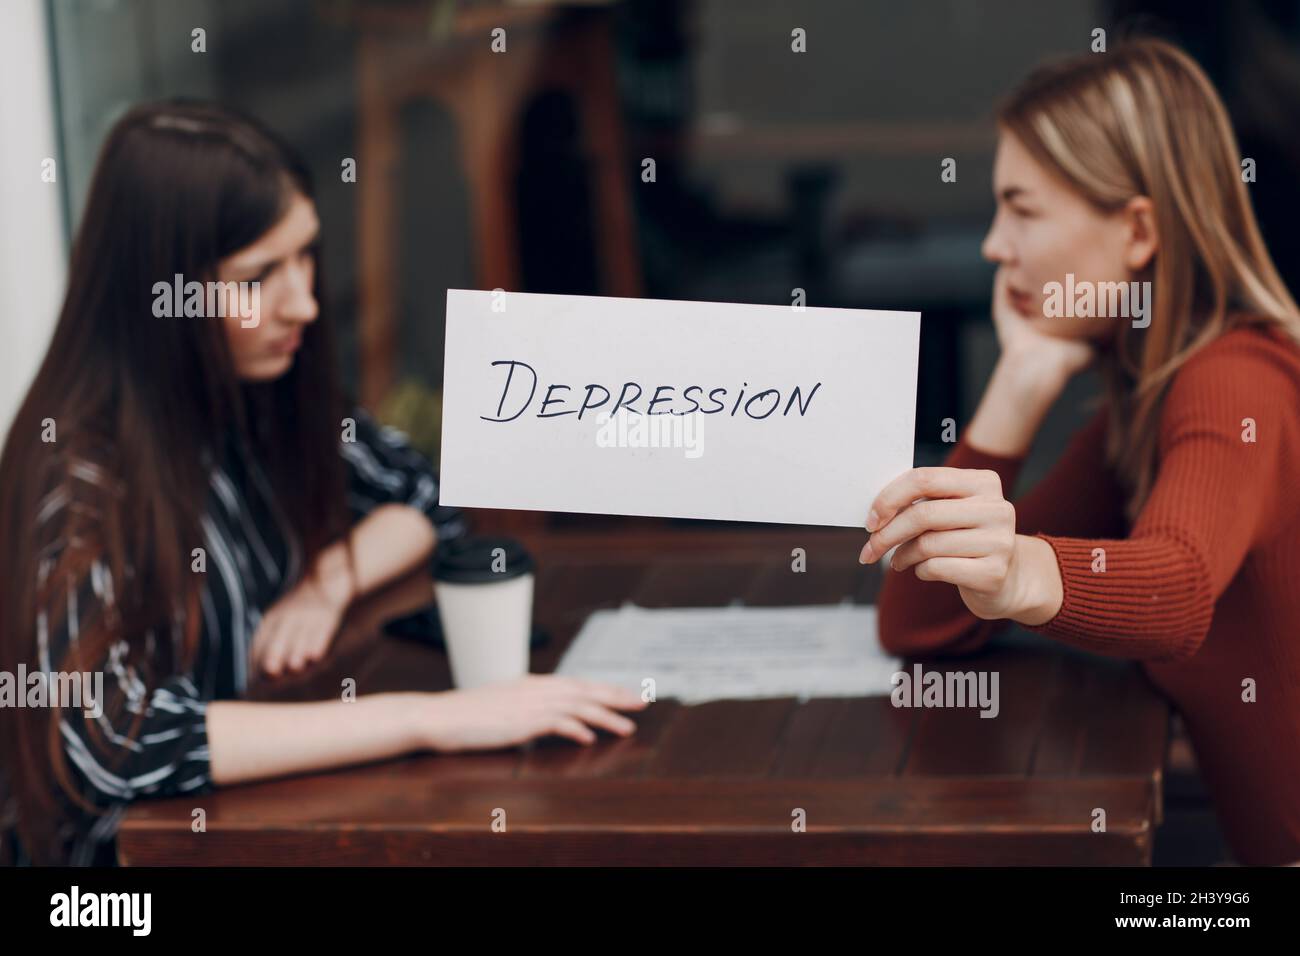 Femme tenant une feuille de papier blanc étiquetée dépression mot dans la main. Deux femmes parlent dans un café de rue. Concept de dépression cachée Banque D'Images